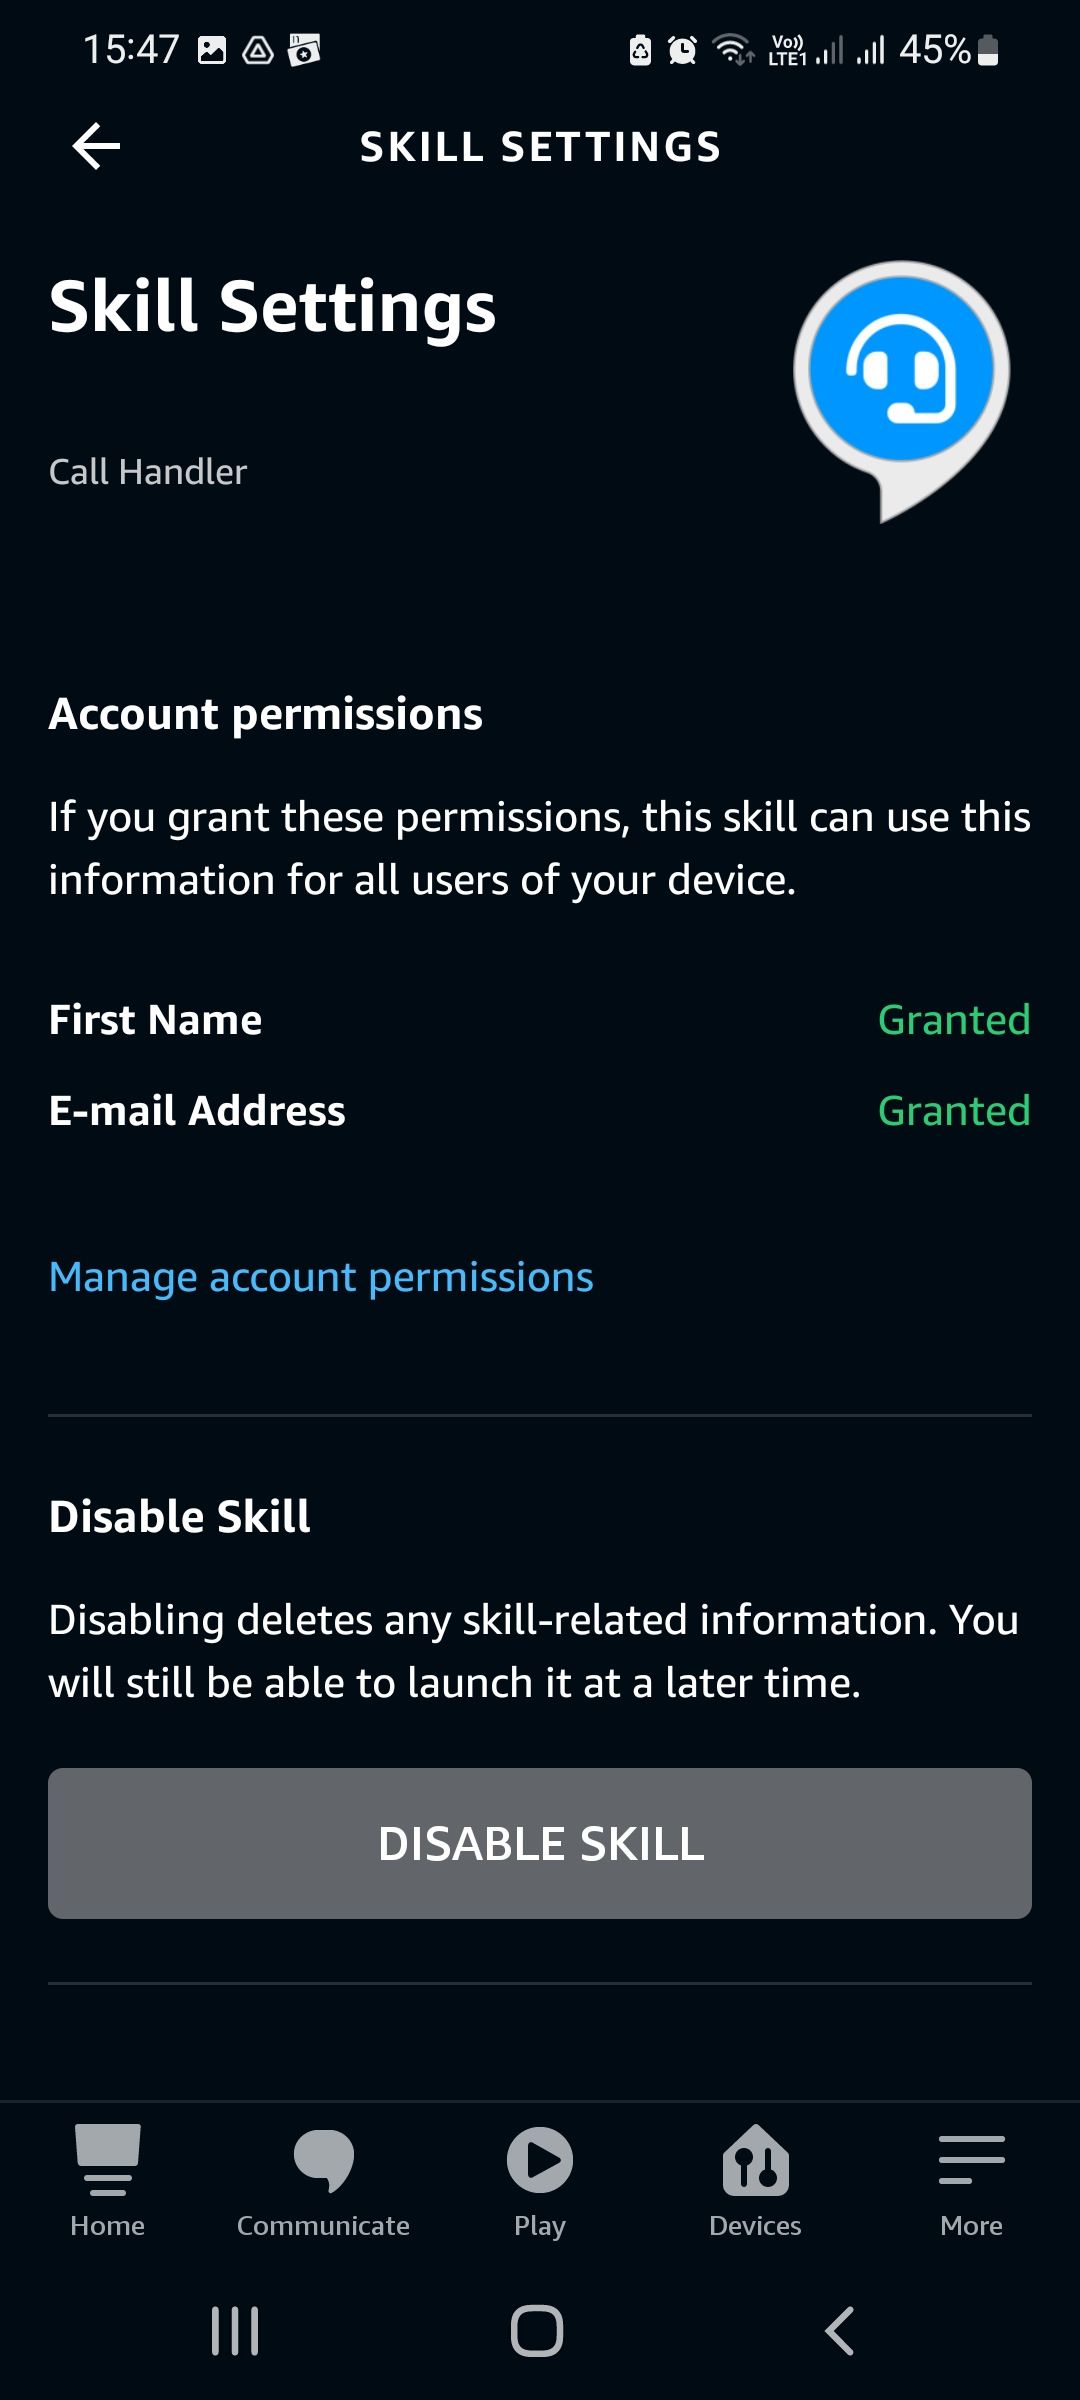 Skill settings screen in Alexa app